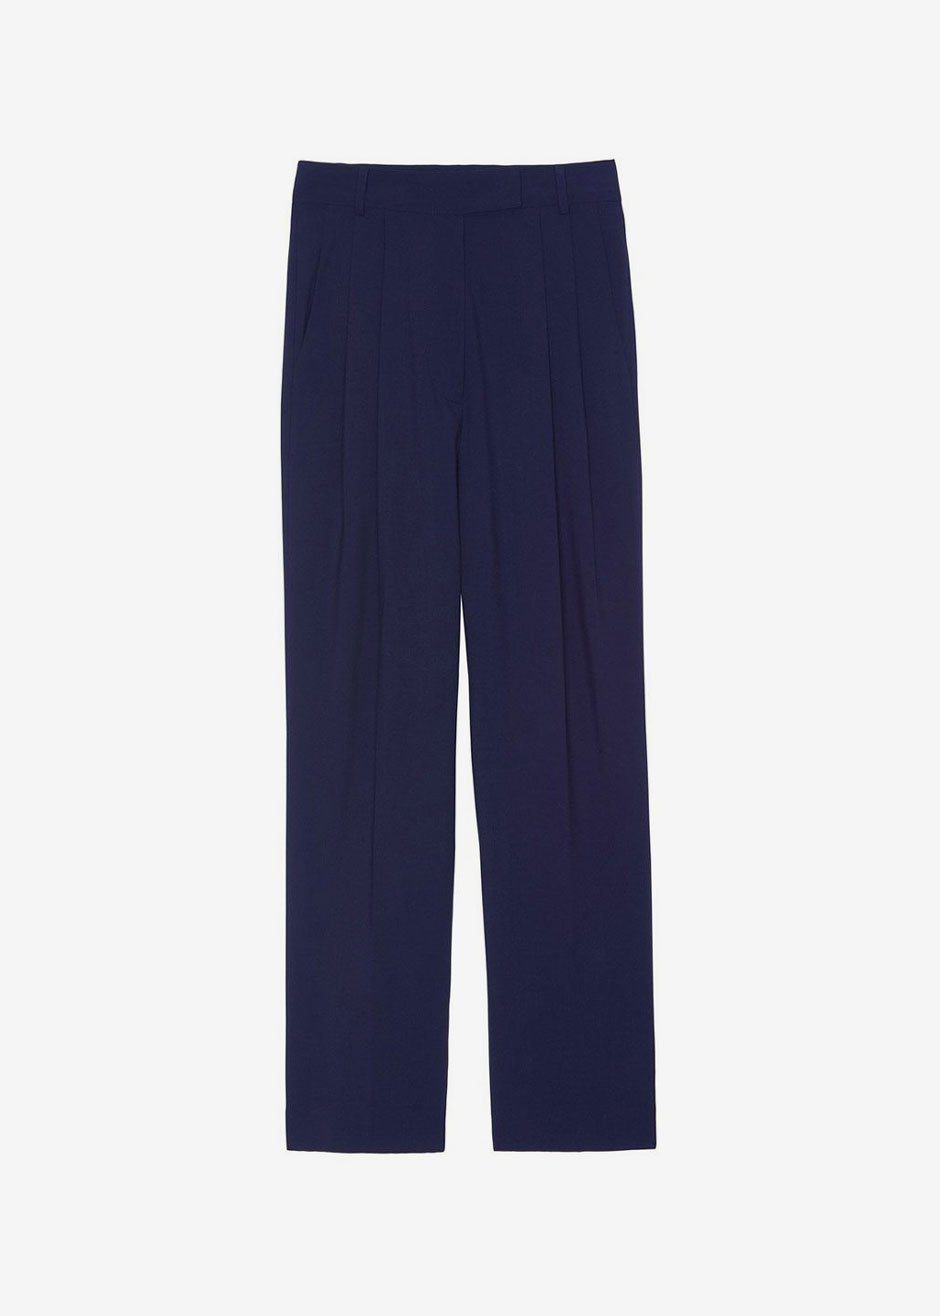 Bea Pleated Suit Pants - Midnight Blue - 8